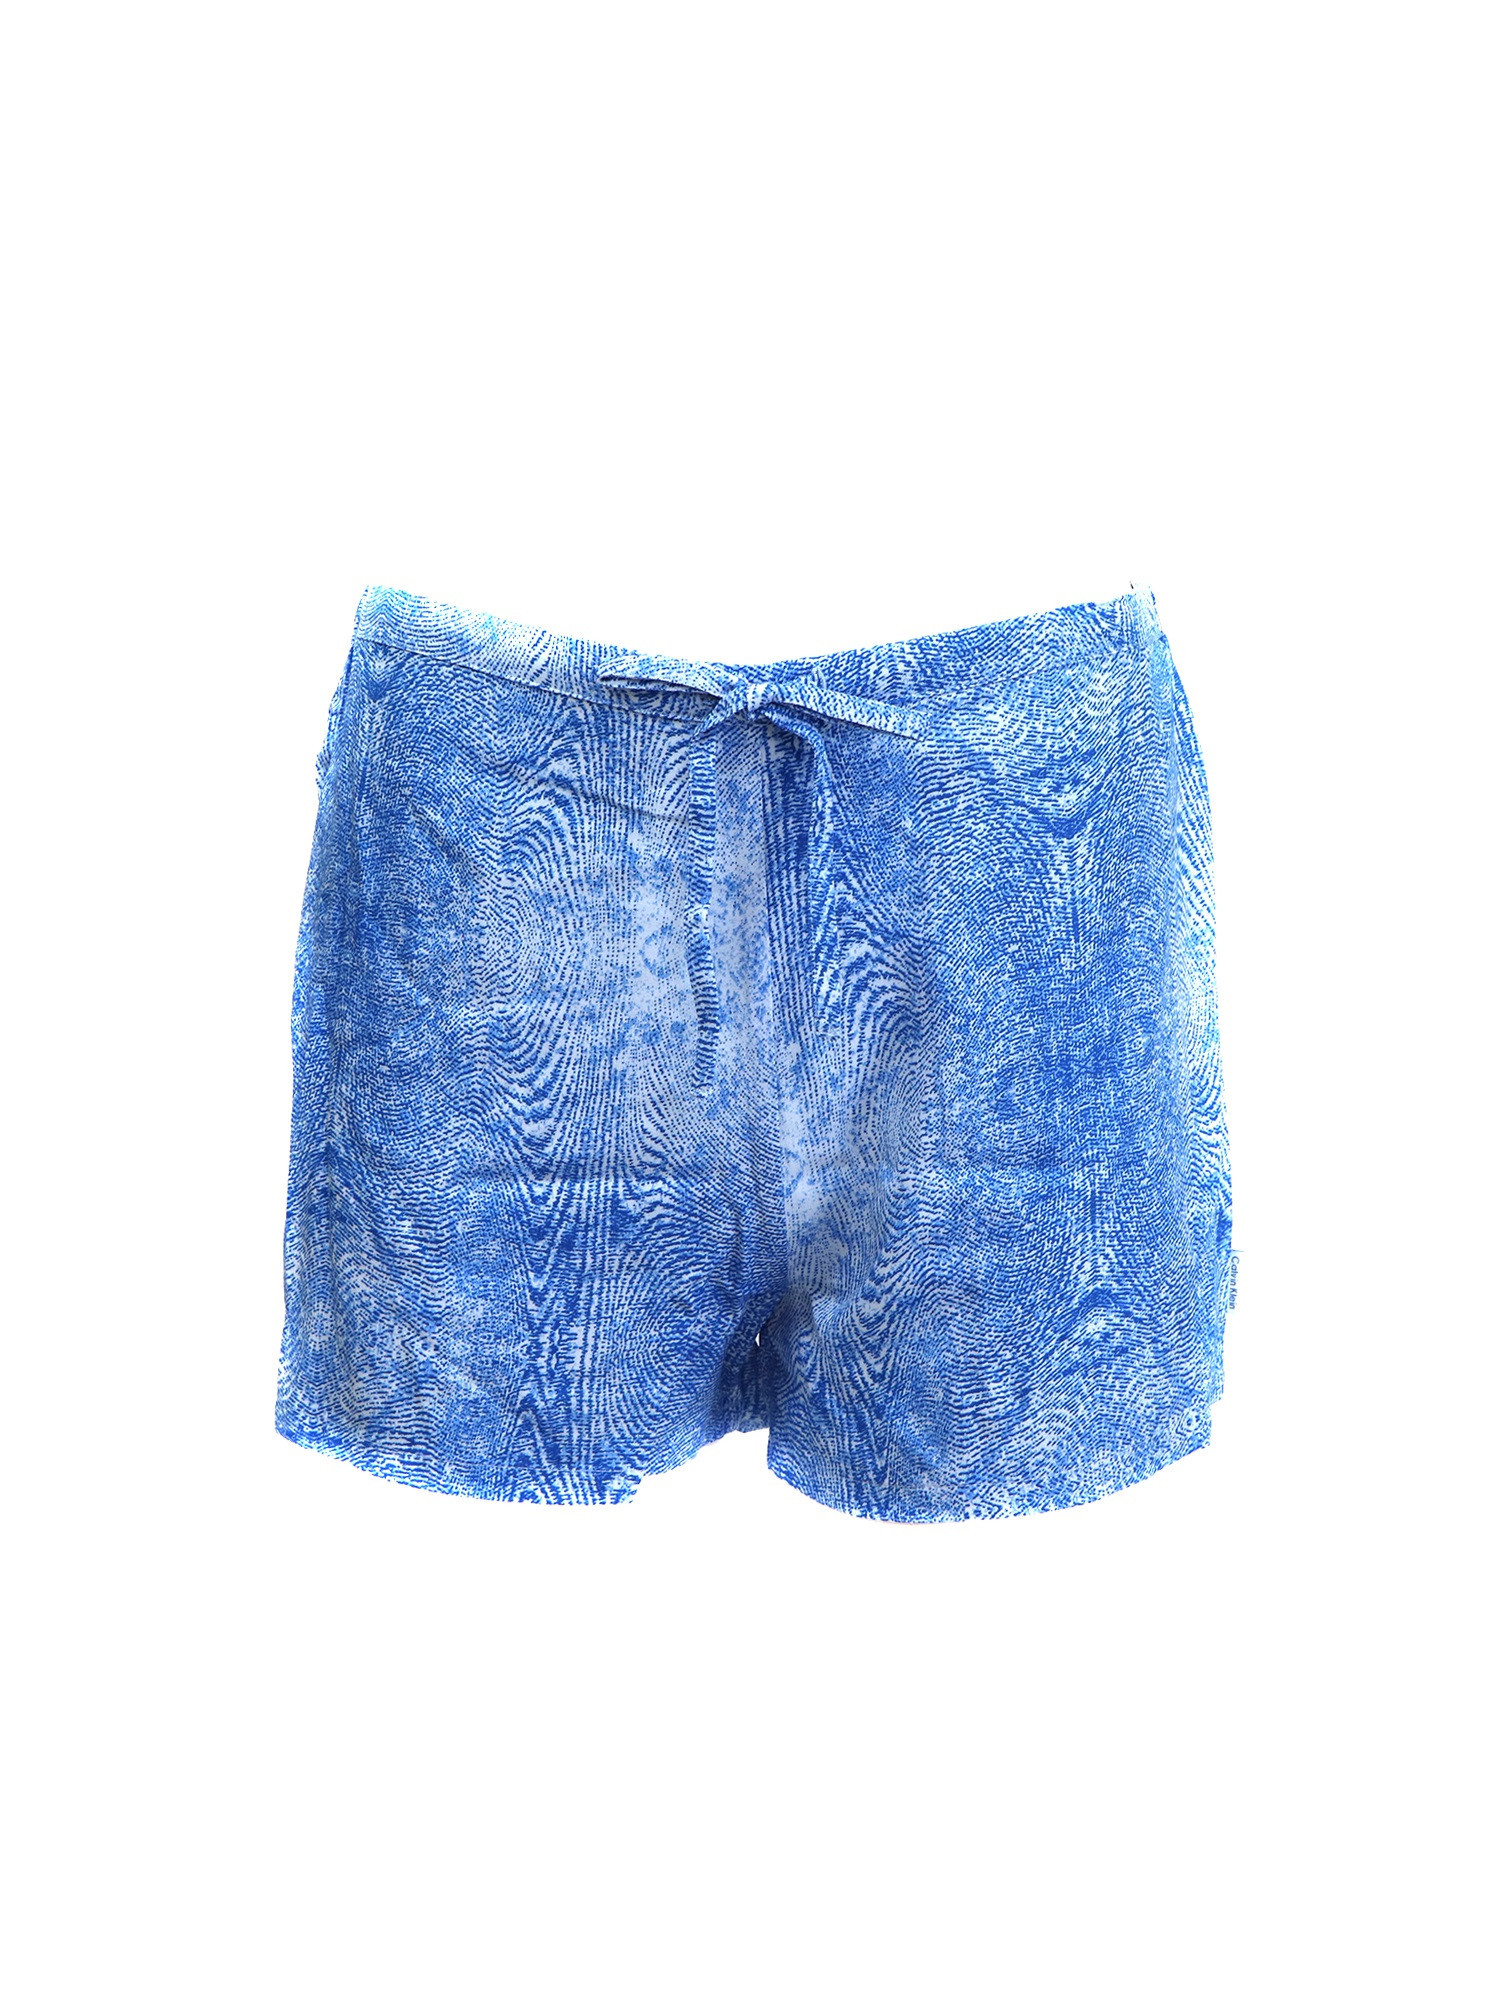 Dámské pyžamové kraťasy model 8741747 modrá - Calvin Klein Velikost: S, Barvy: Modrá